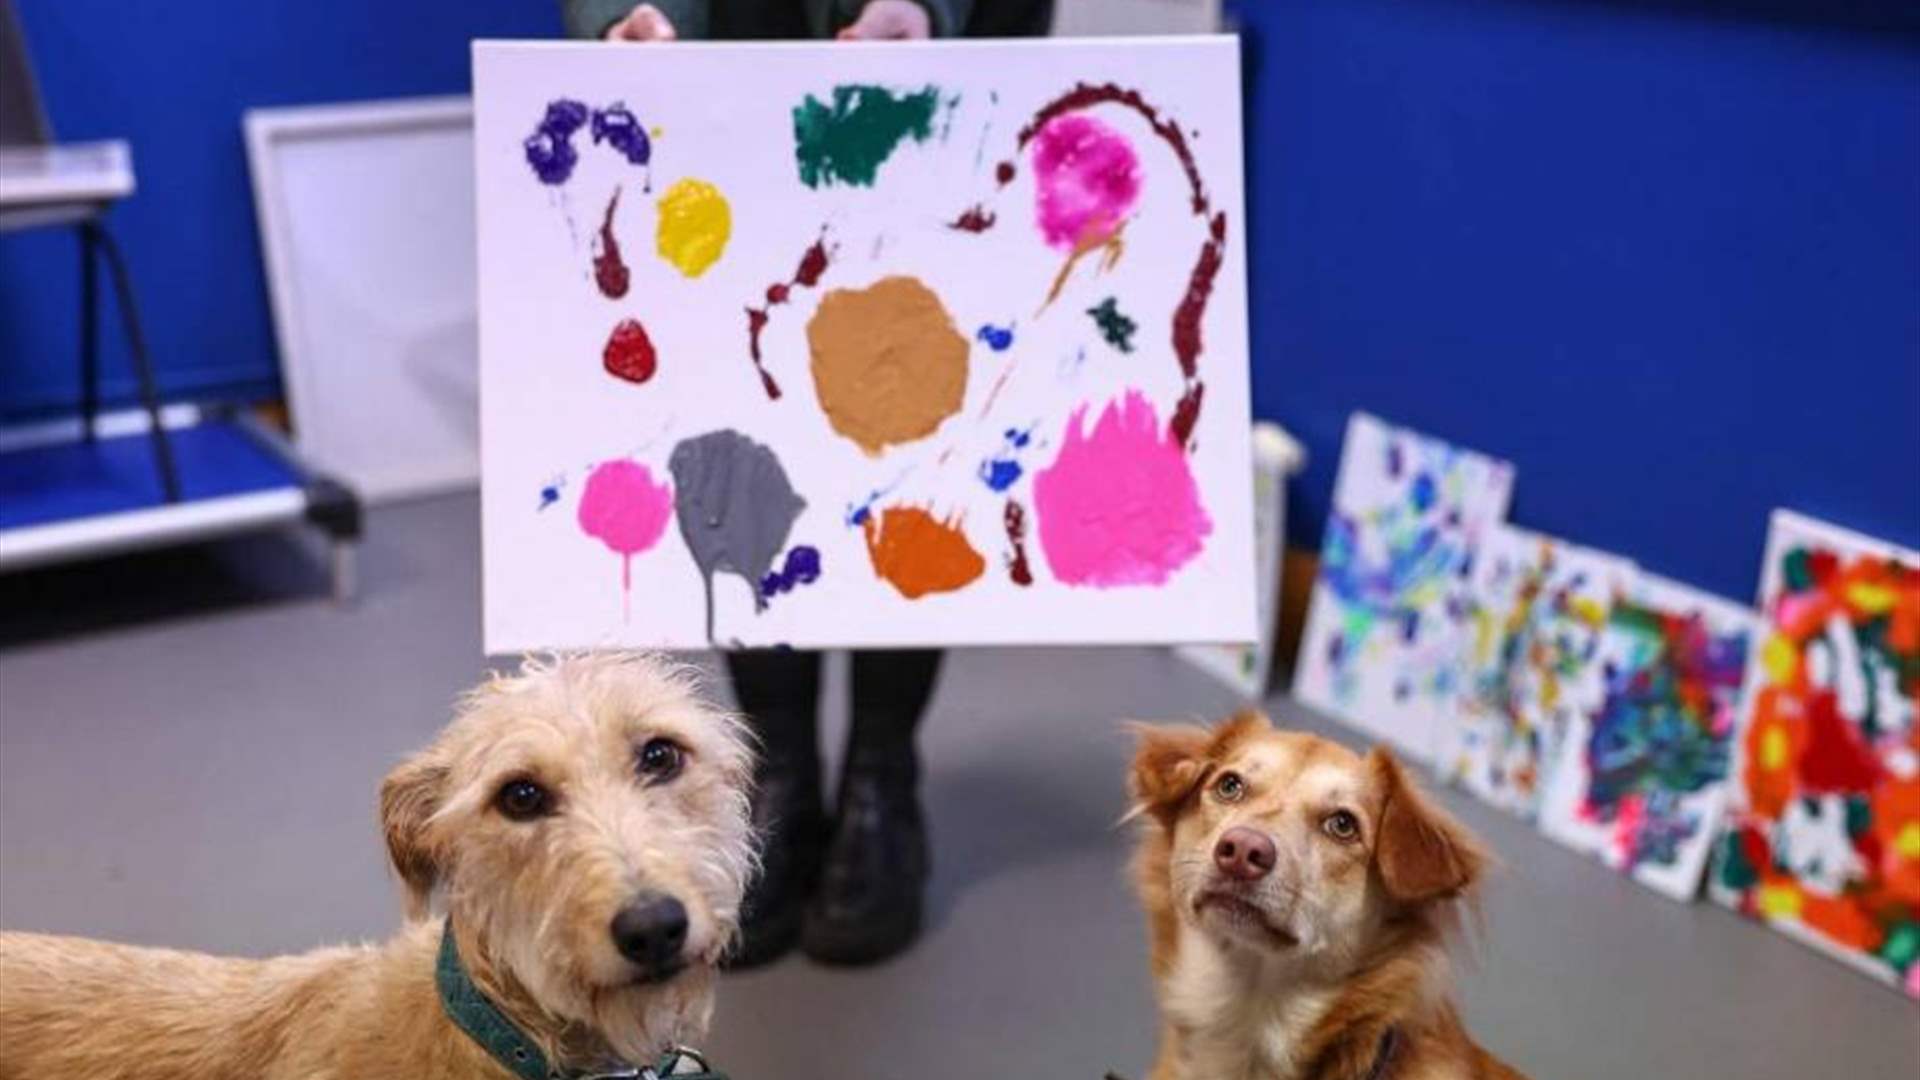 مركز لإيواء الكلاب المهجورة يلجأ لتمويل نفسه إلى بيع لوحات رسمتها حيواناته